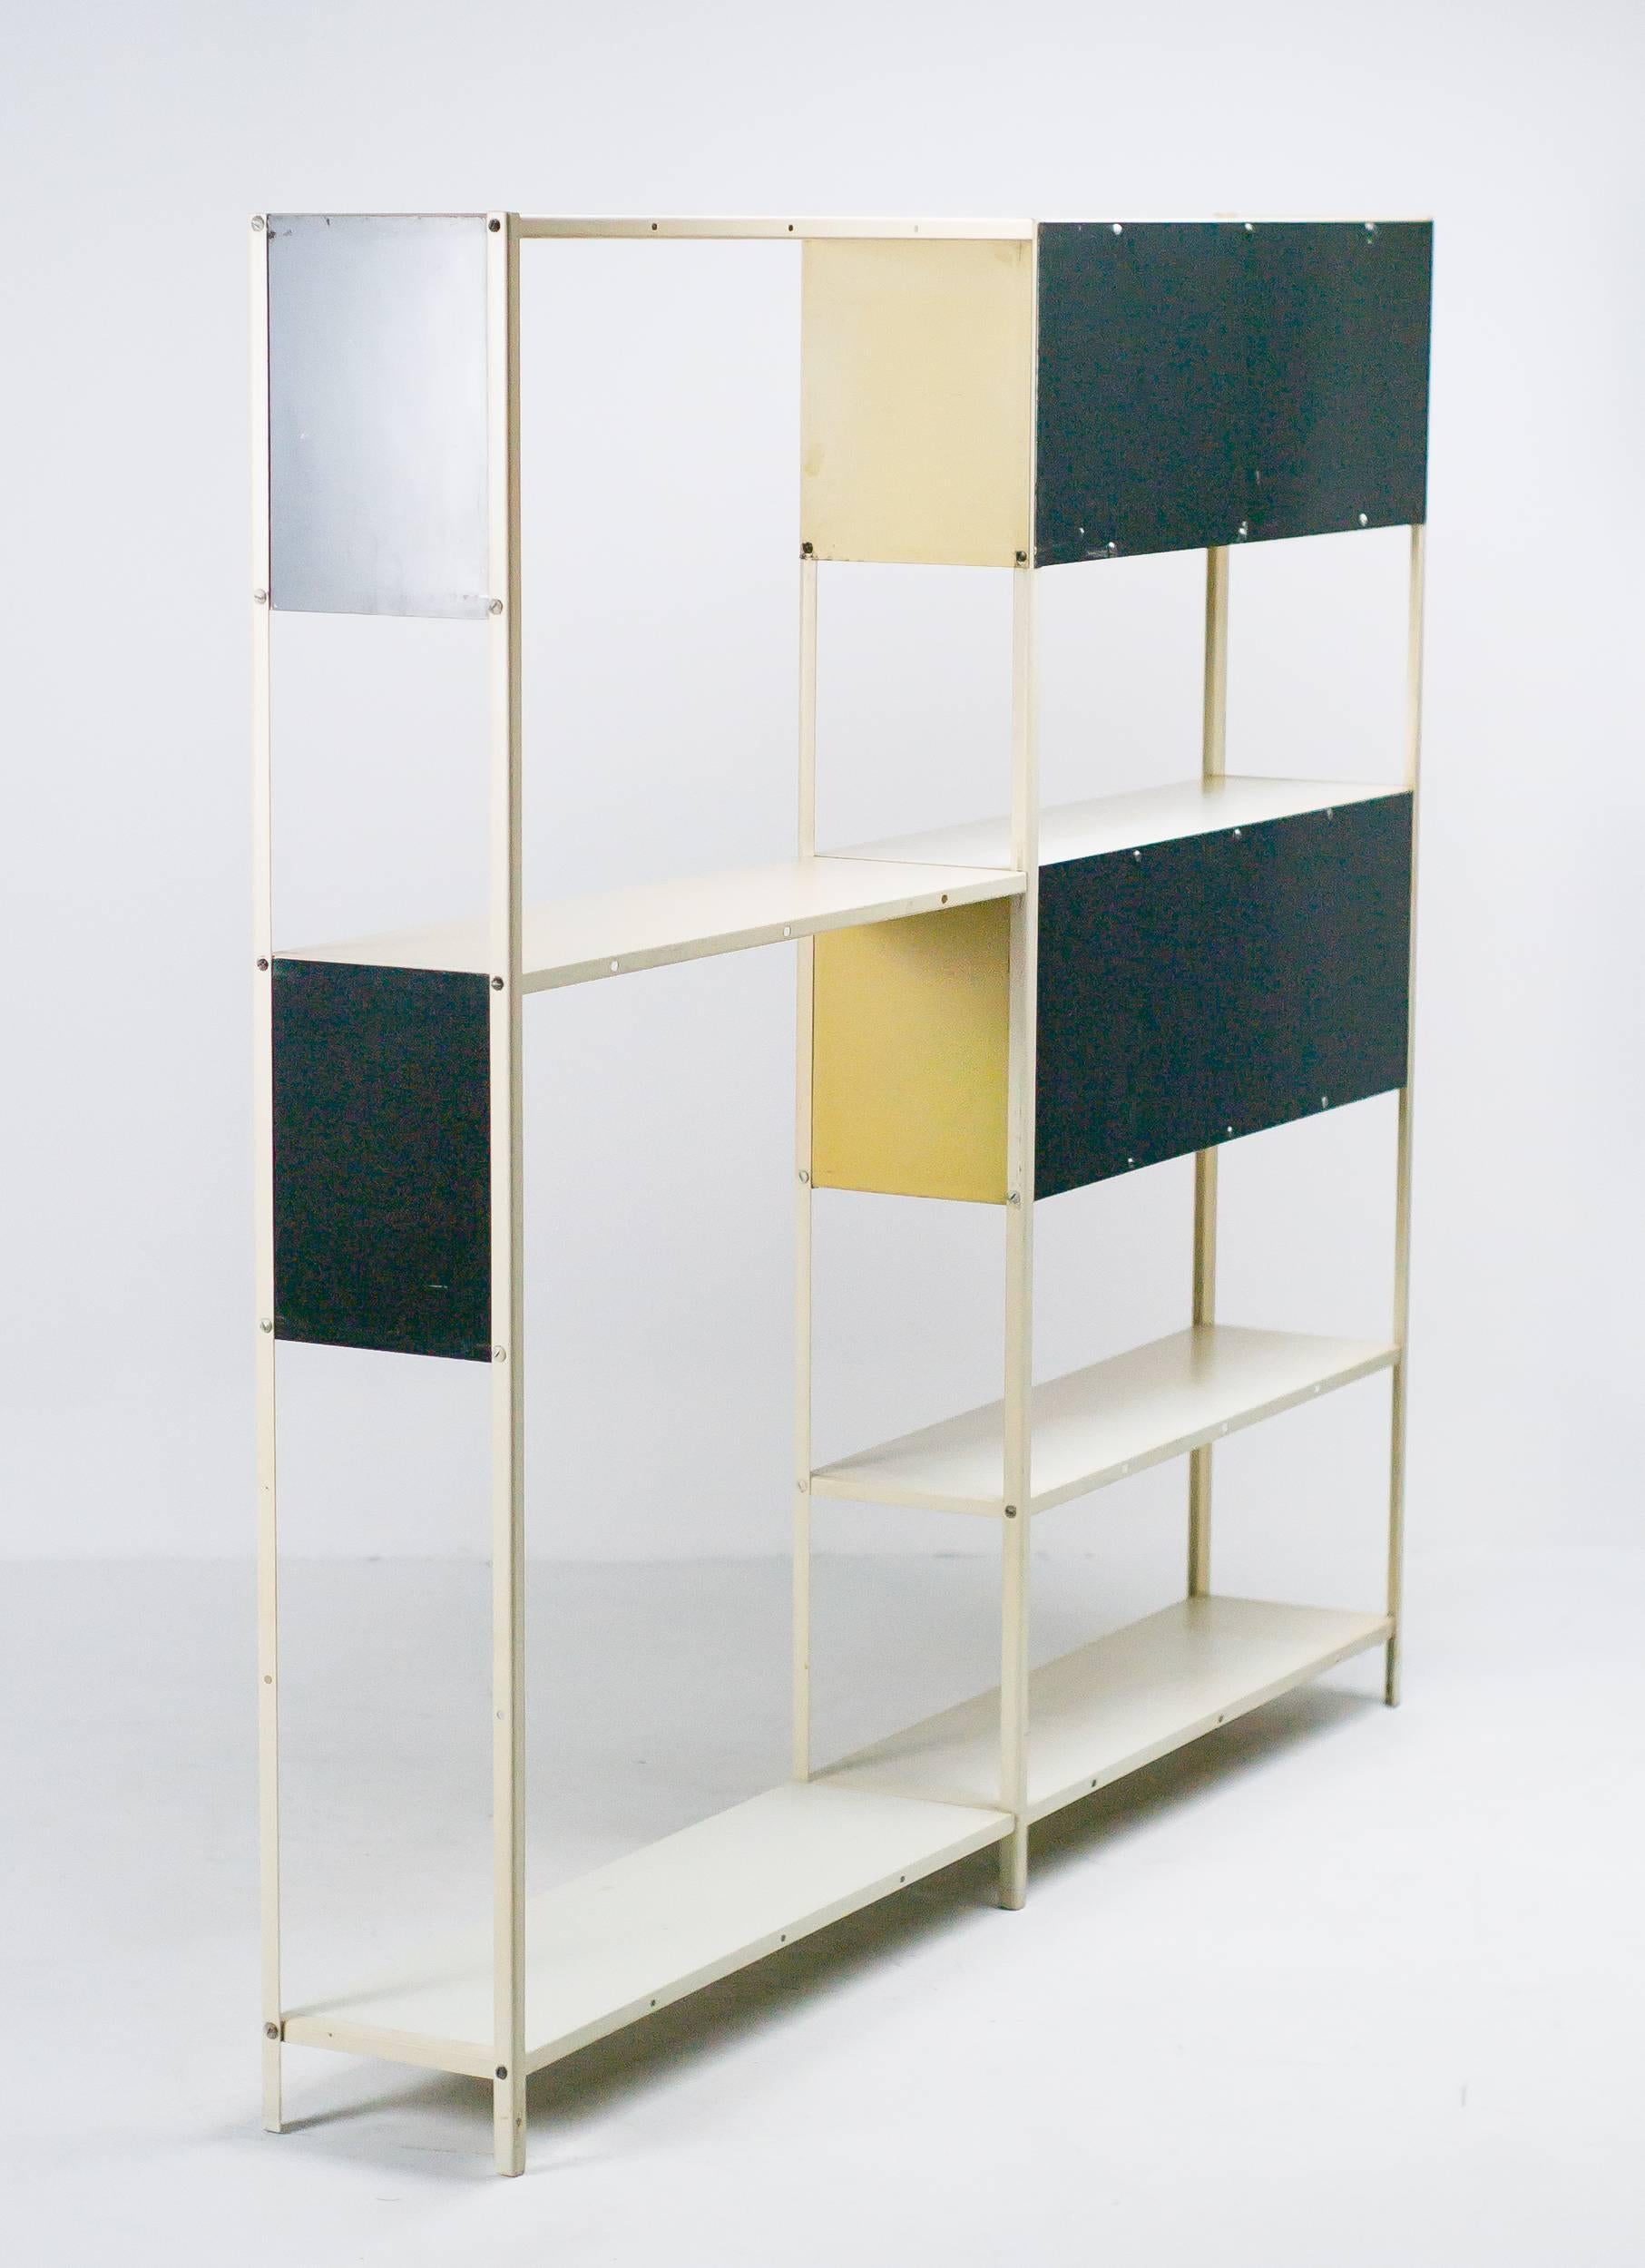 Enameled Modular Room Divider or Bookcase Designed in 1953 by Friso Kramer